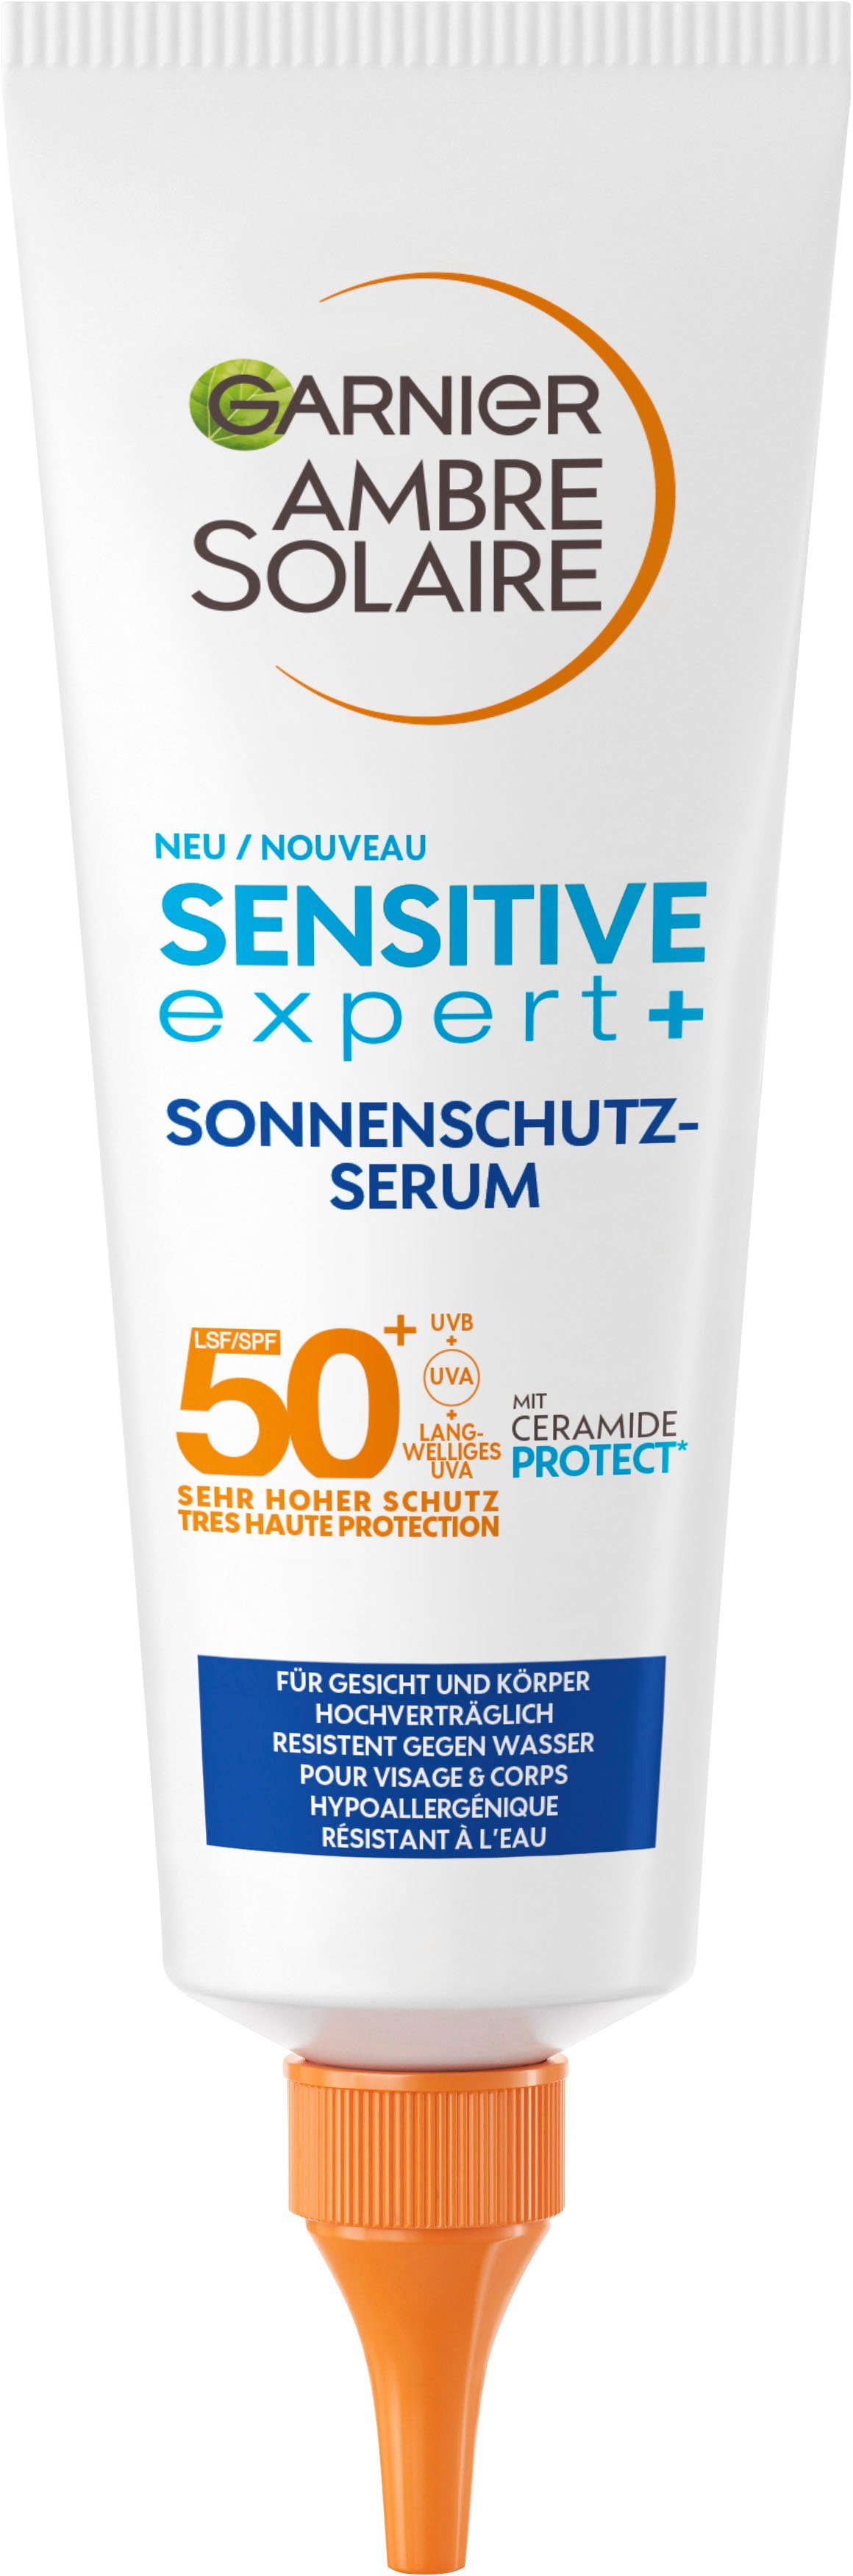 Sonnenschutz-Serum Gesichtsserum Sensitive GARNIER Garnier